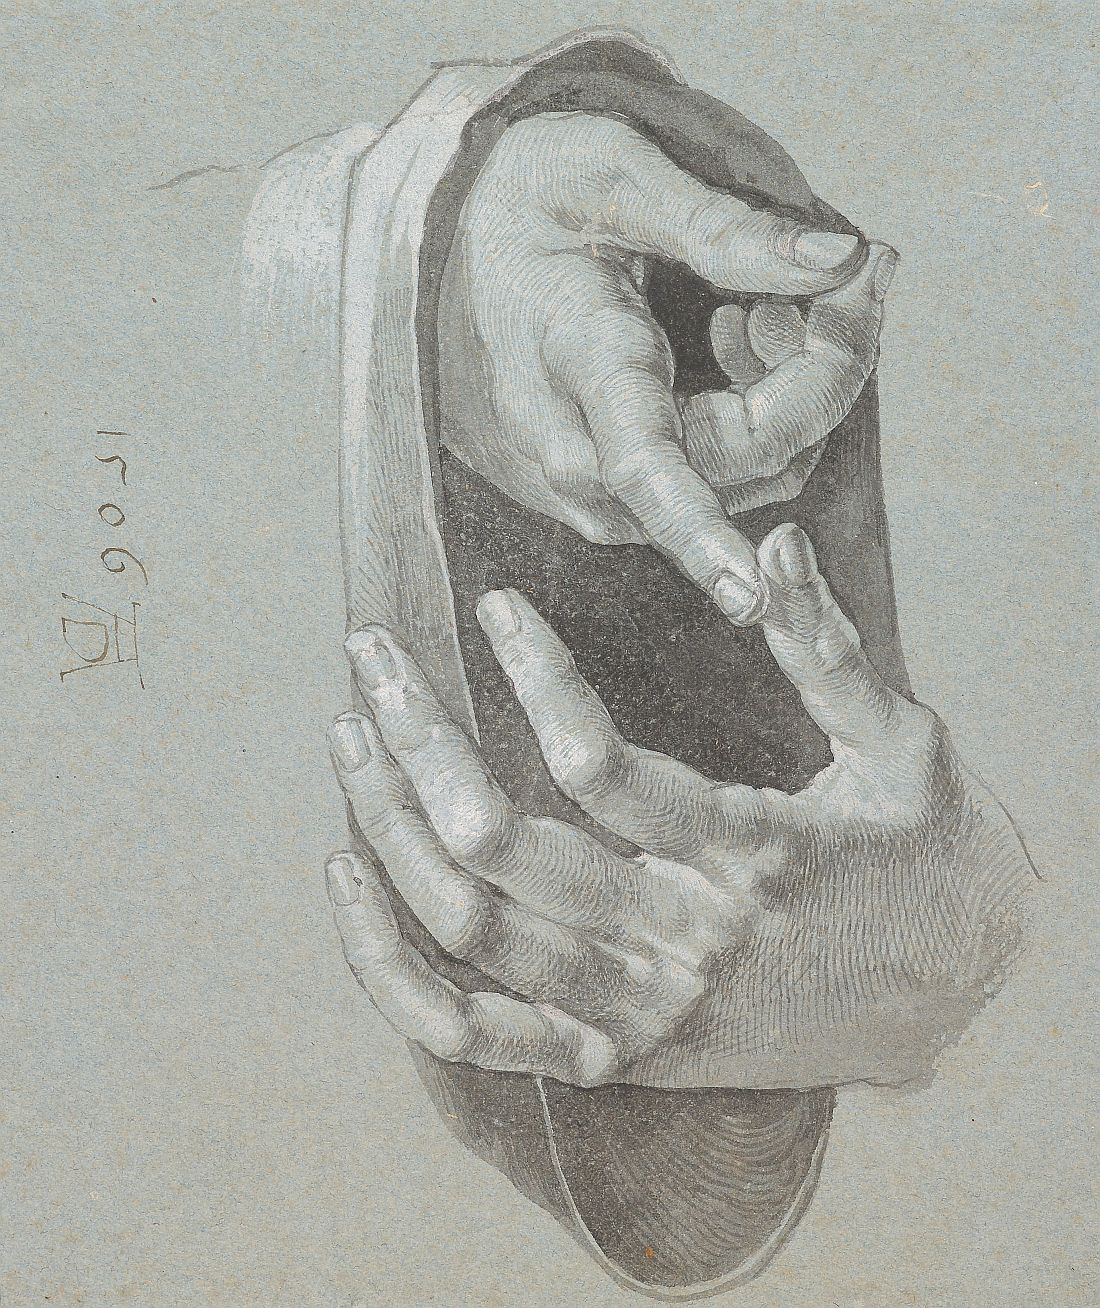 Albrecht Dürer's Zeichnung der Hände des 12-jährigen Jesu, datiert 1506